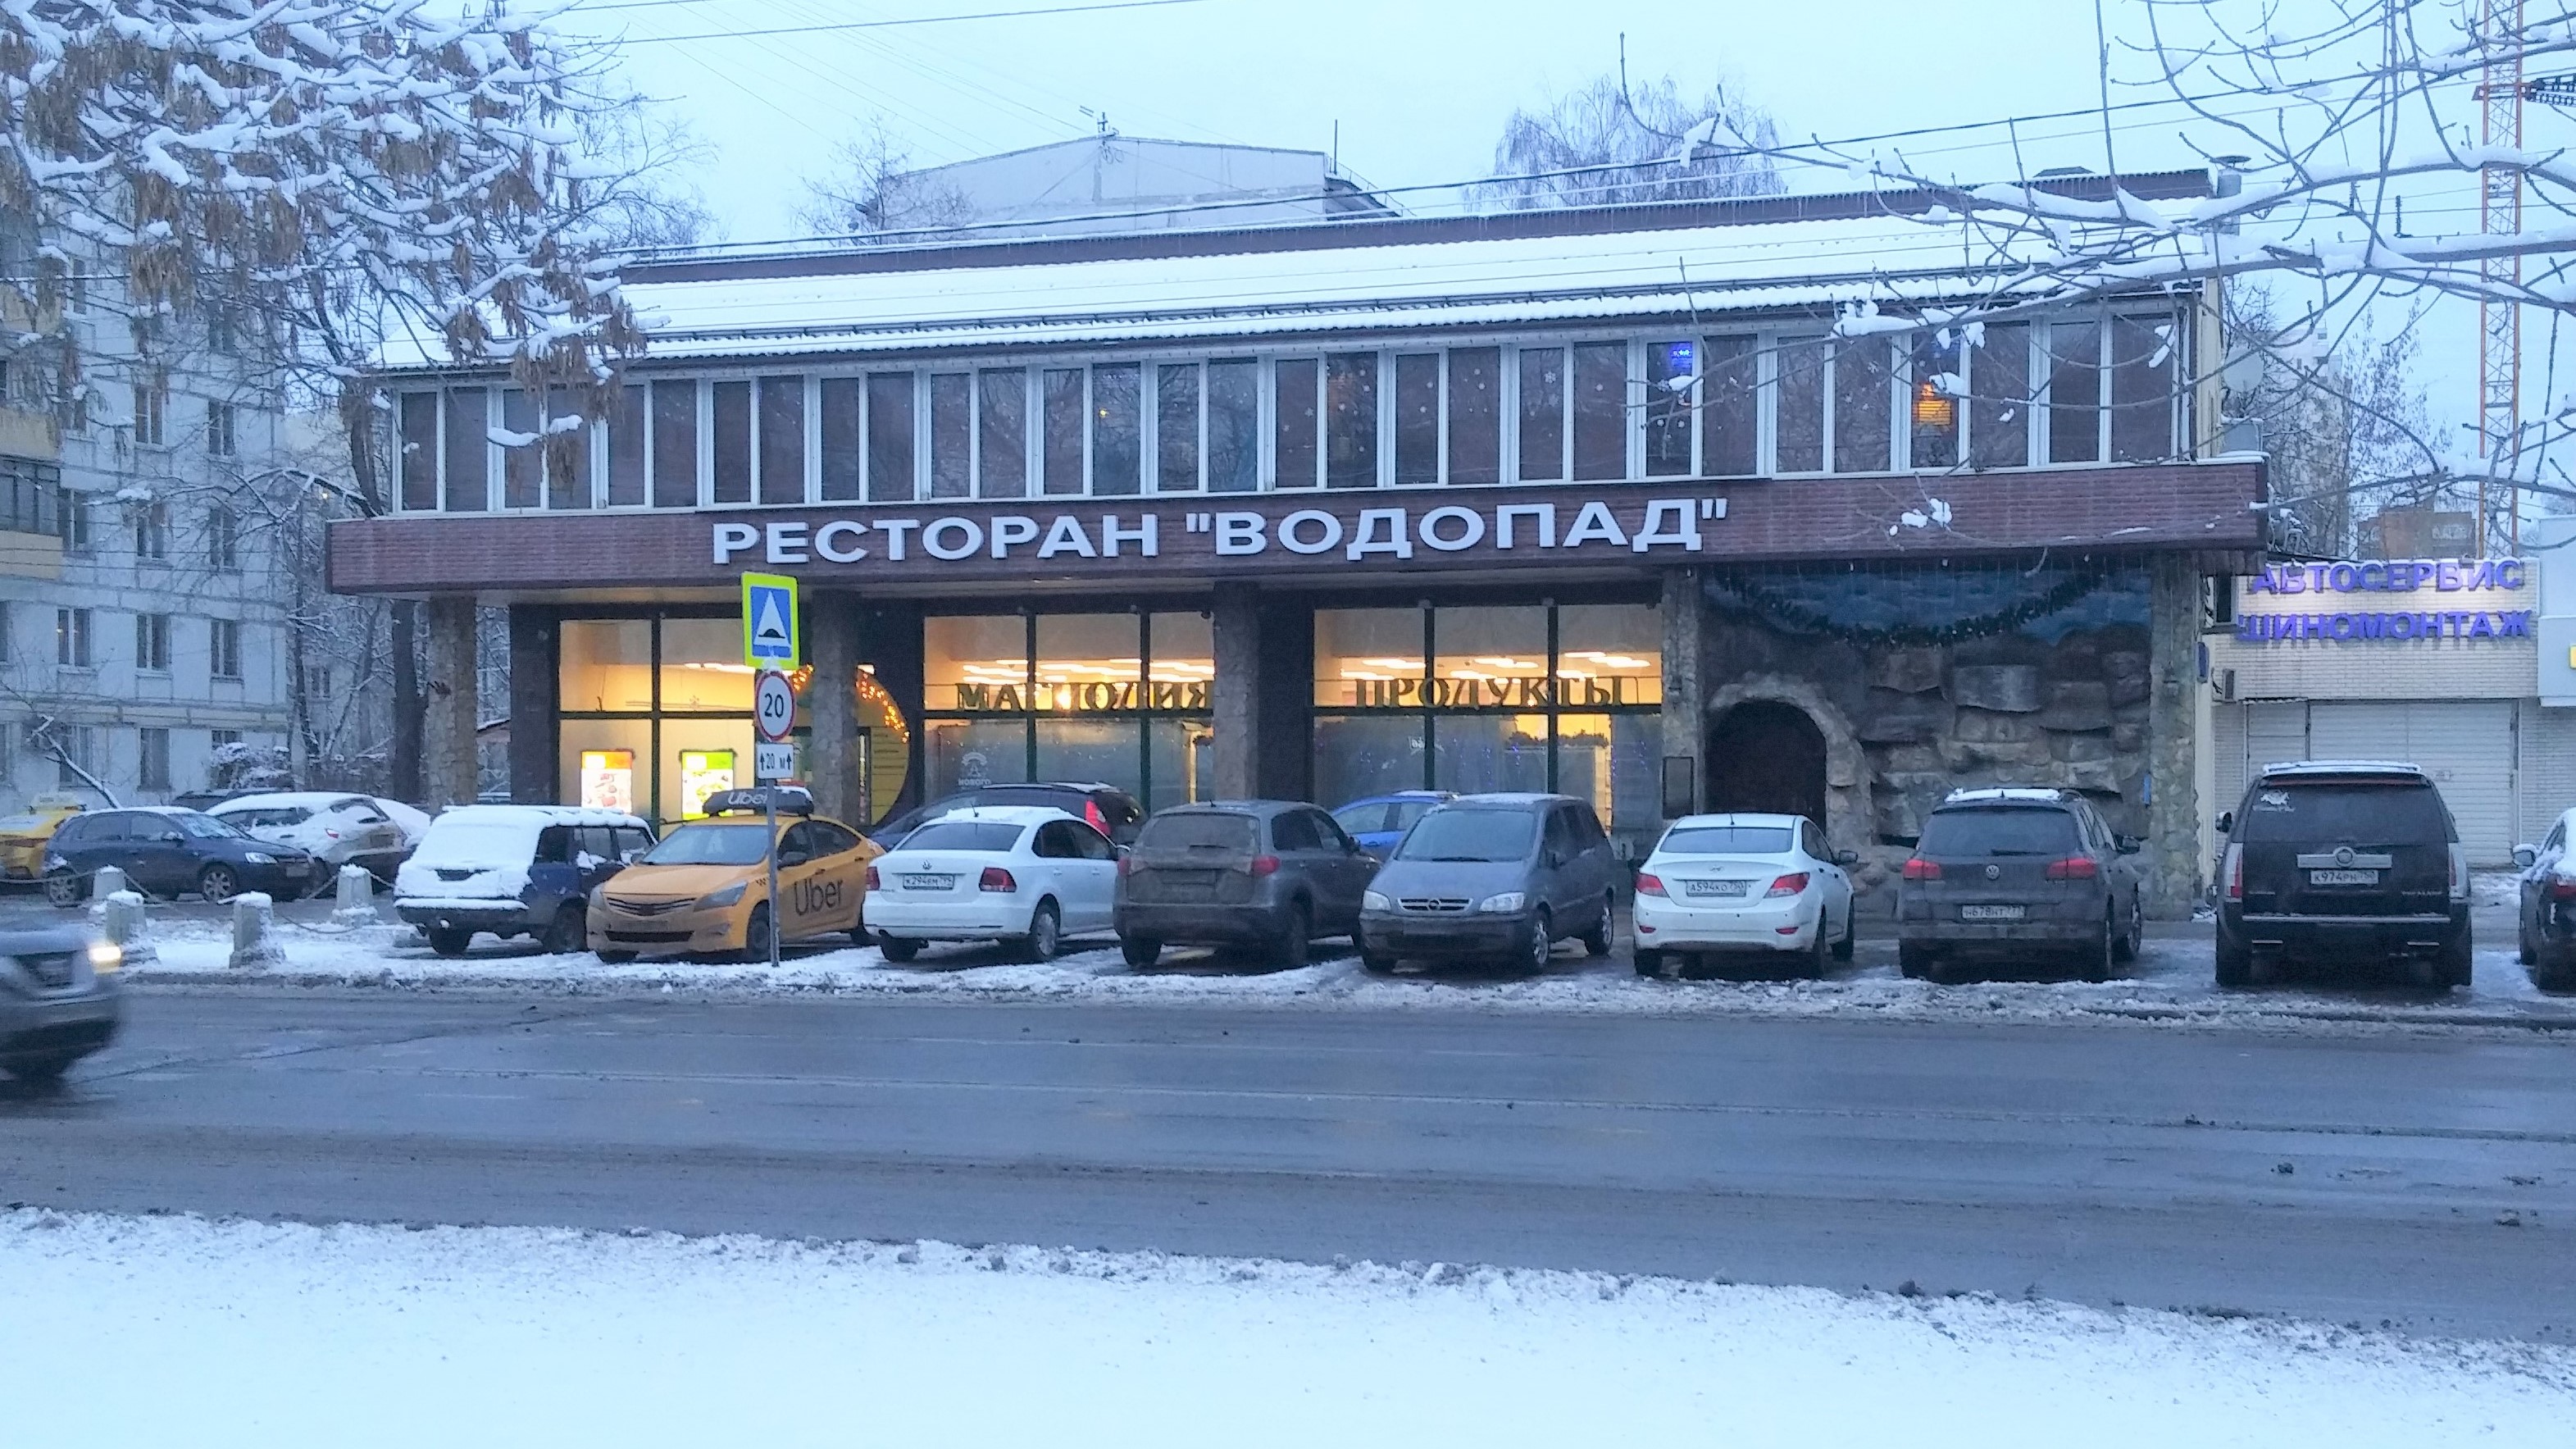 Ресторан водопад Кузьминки